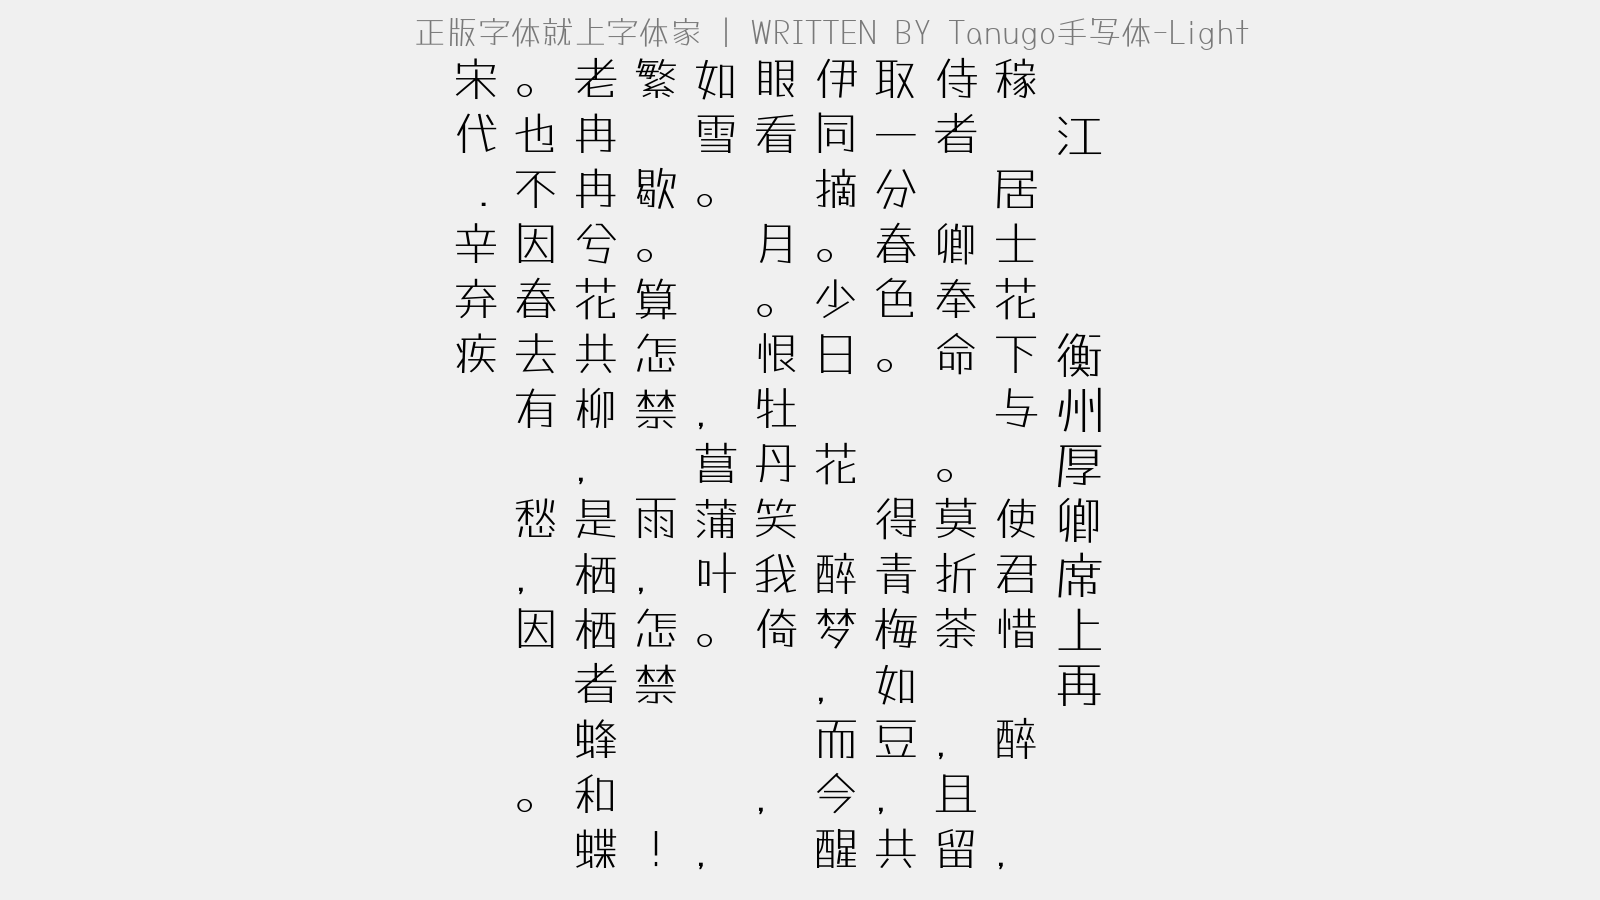 Tanugo手写体-Light - 满江红·饯郑衡州厚卿席上再赋